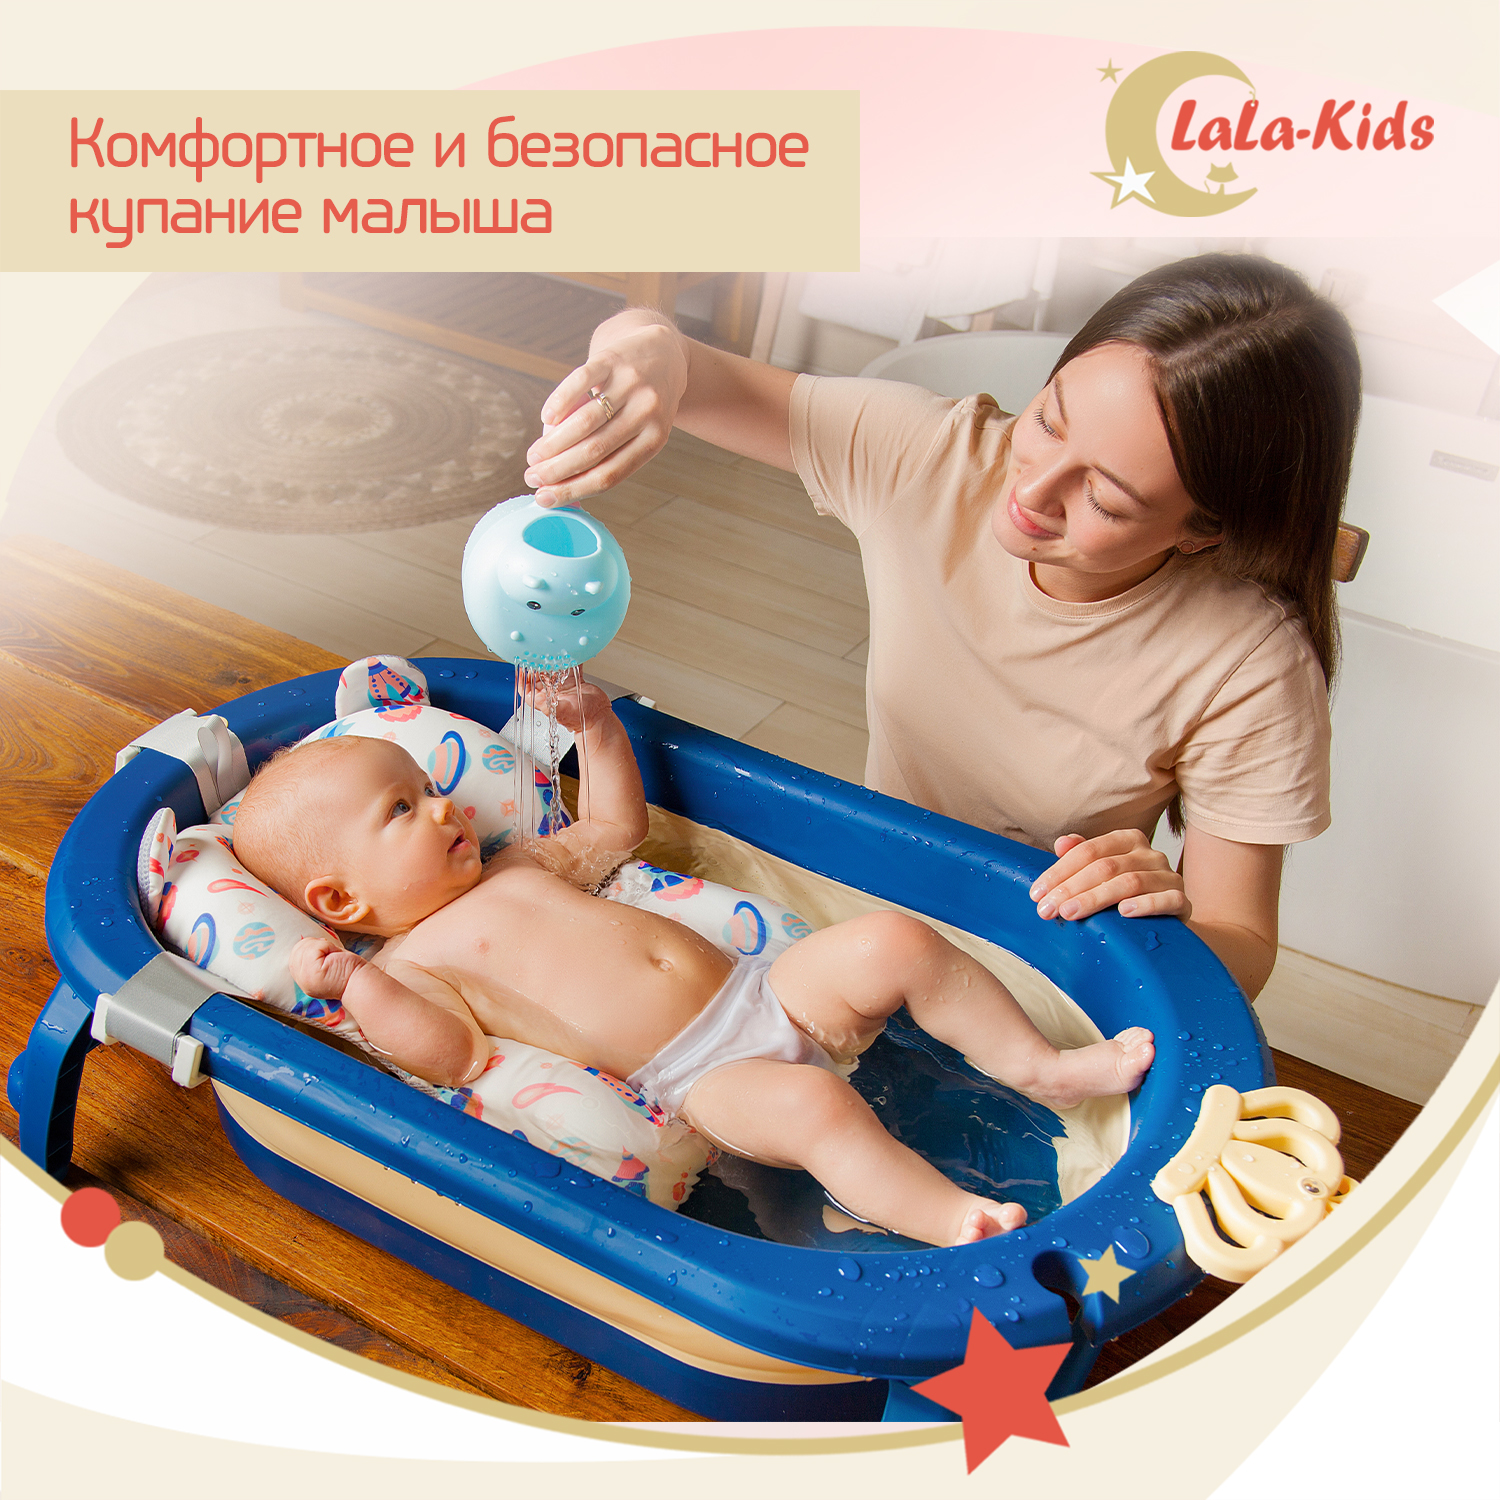 Детская ванночка LaLa-Kids складная с матрасиком для купания новорожденных - фото 3